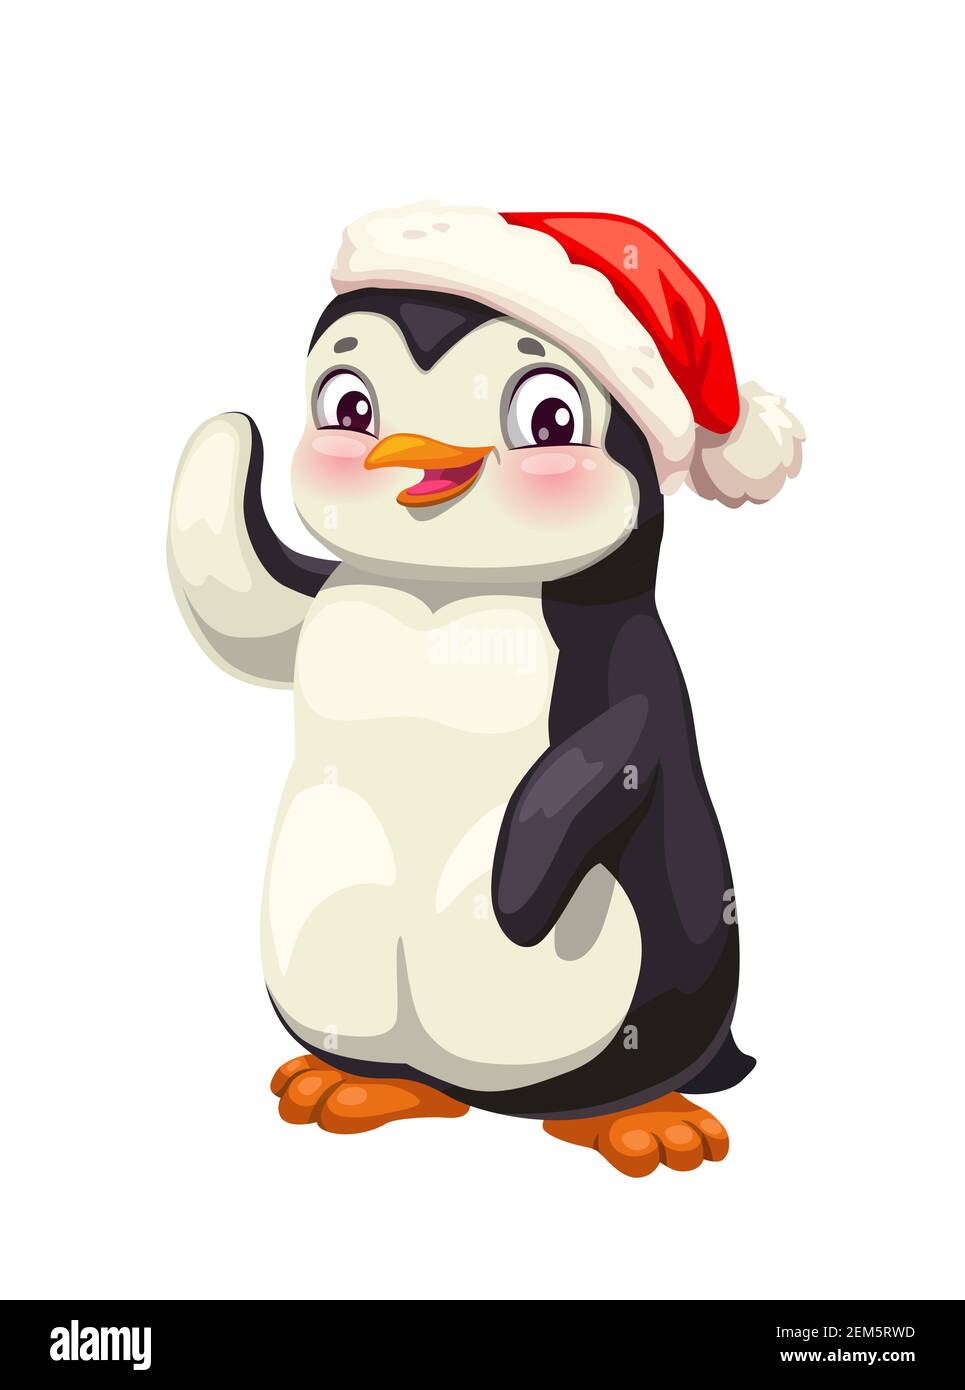 Pinguino carino animale cartoon in inverno rosso cappello vettore disegno. Uccello antartico innevato con faccia bianca e nera sorridente e sventolante. Carattere pinguino polare Illustrazione Vettoriale